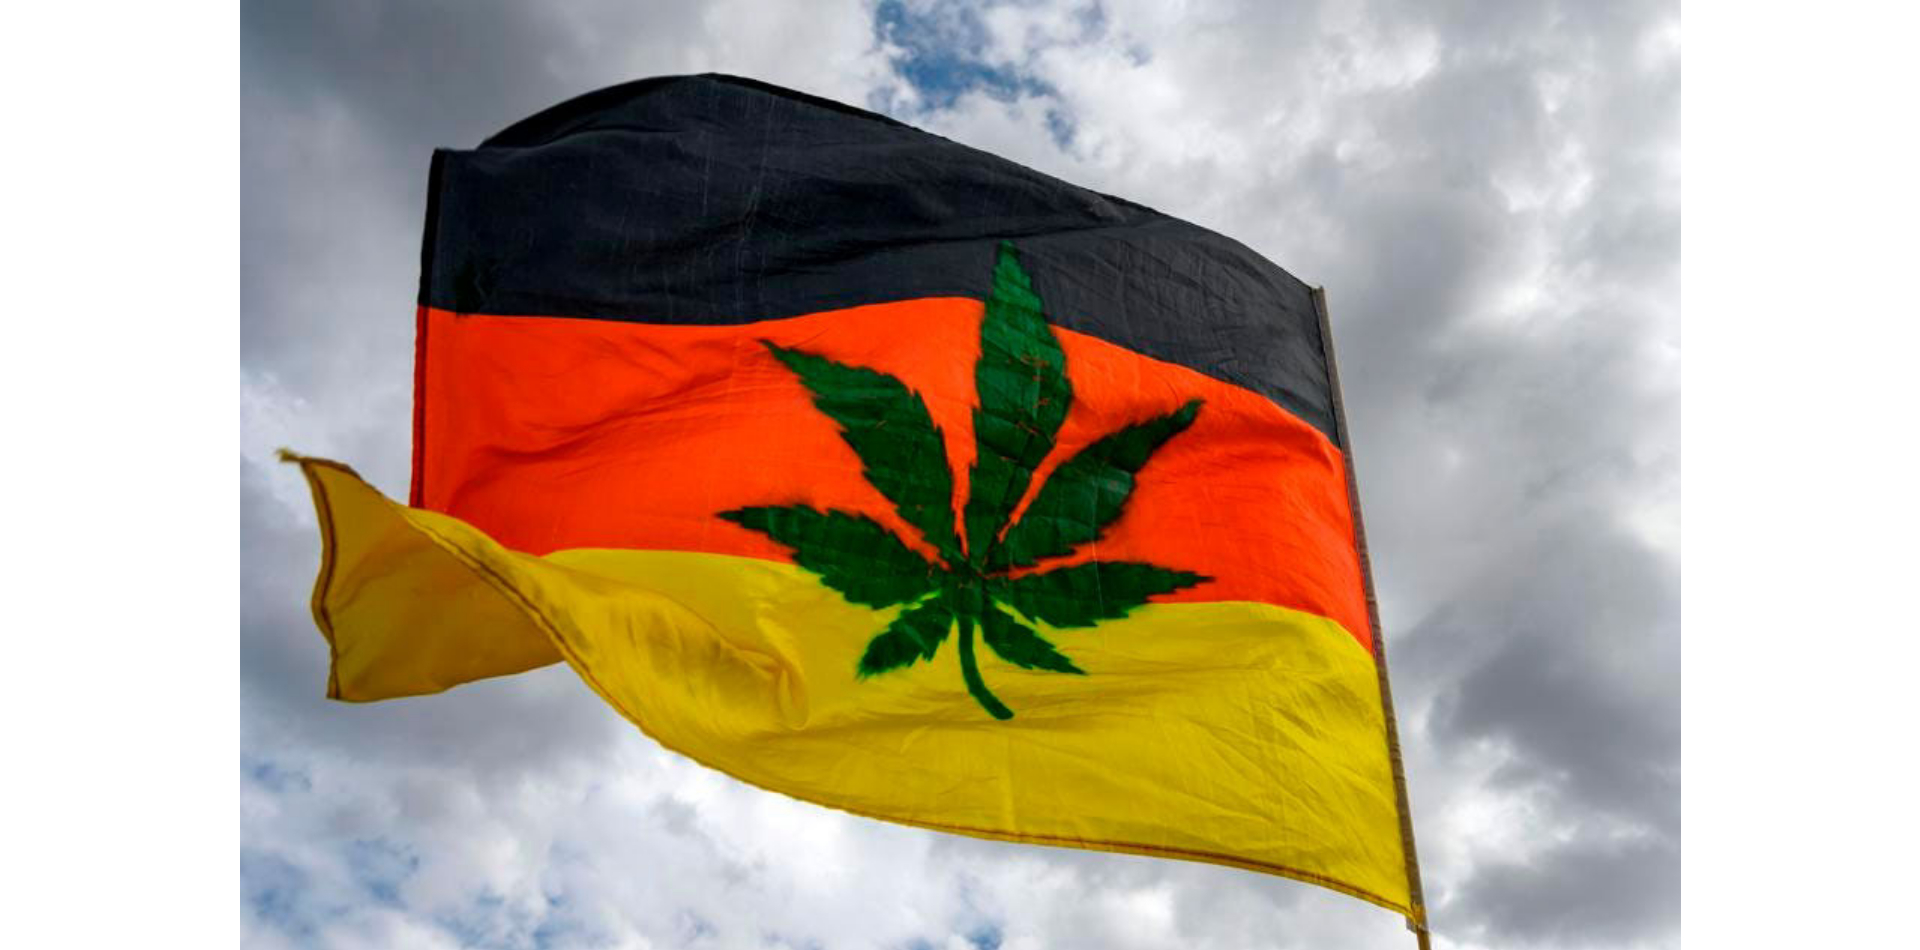 Warum Deutschland nicht der zukünftige Anführer von europäischem Cannabis ist